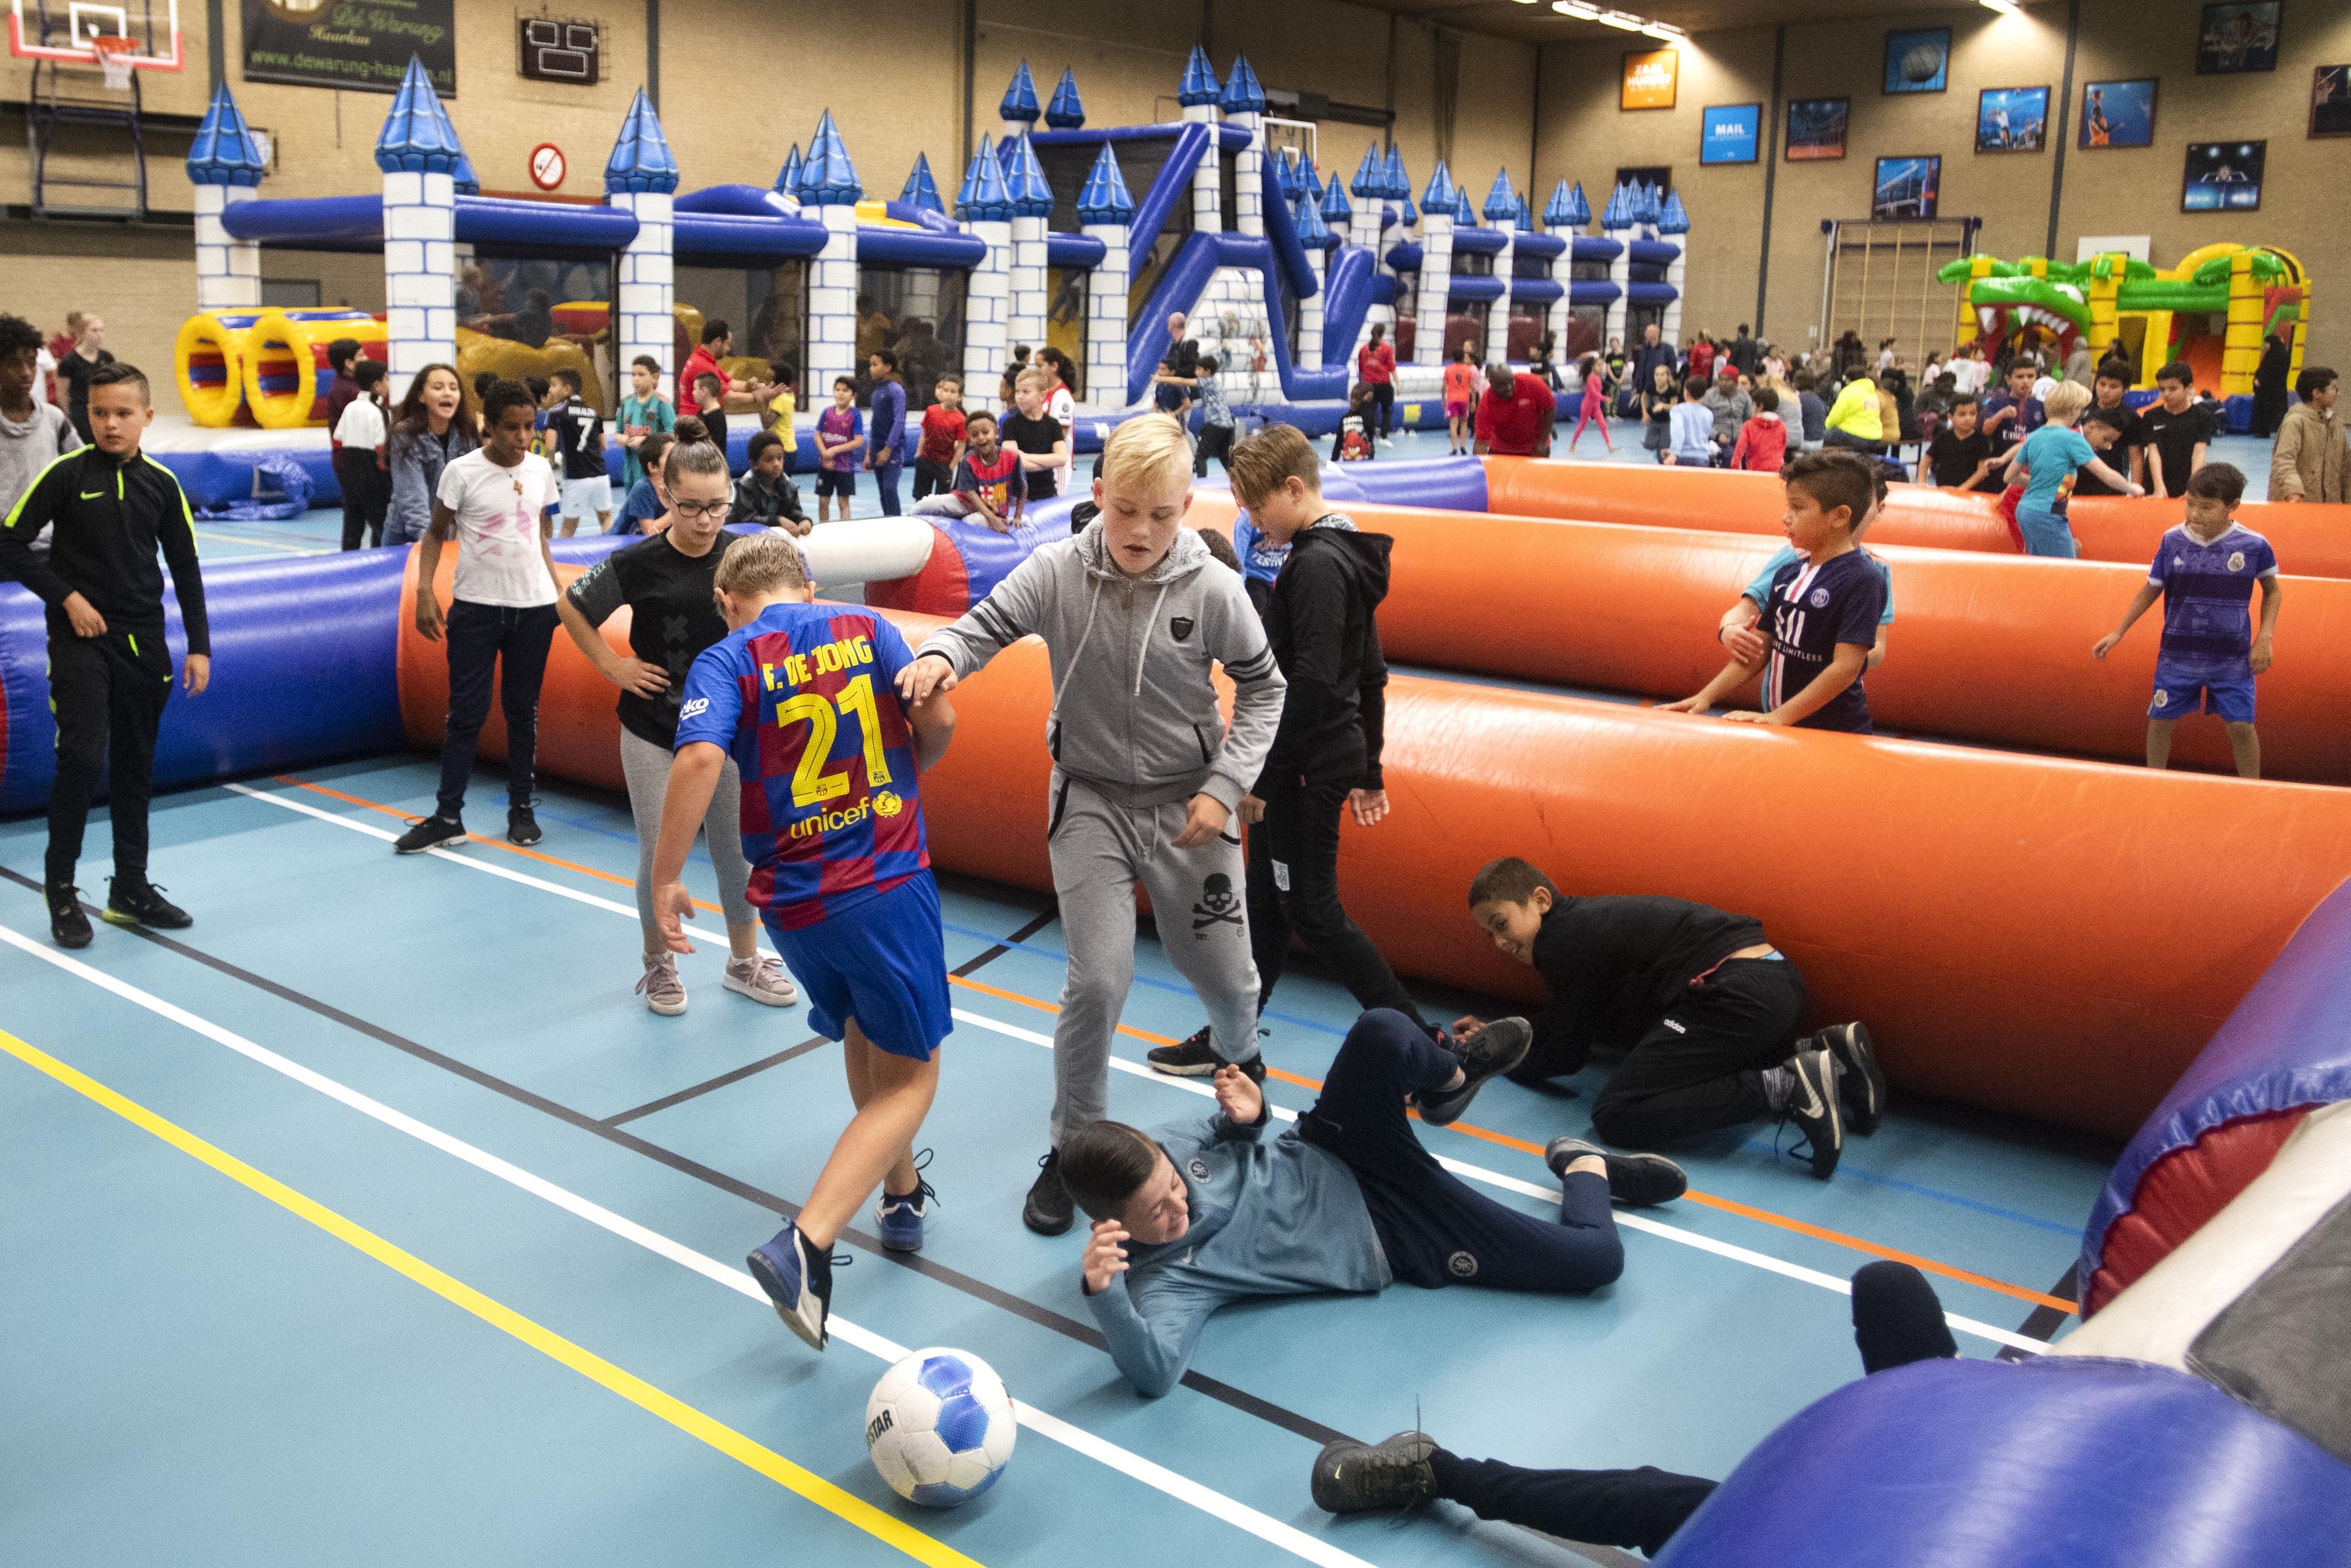 Maken pik kapperszaak Spaarnehal in Schalkwijk omgetoverd tot kinderwalhalla: een sporthal vol  ballen en opblaasdingen | IJmuidercourant